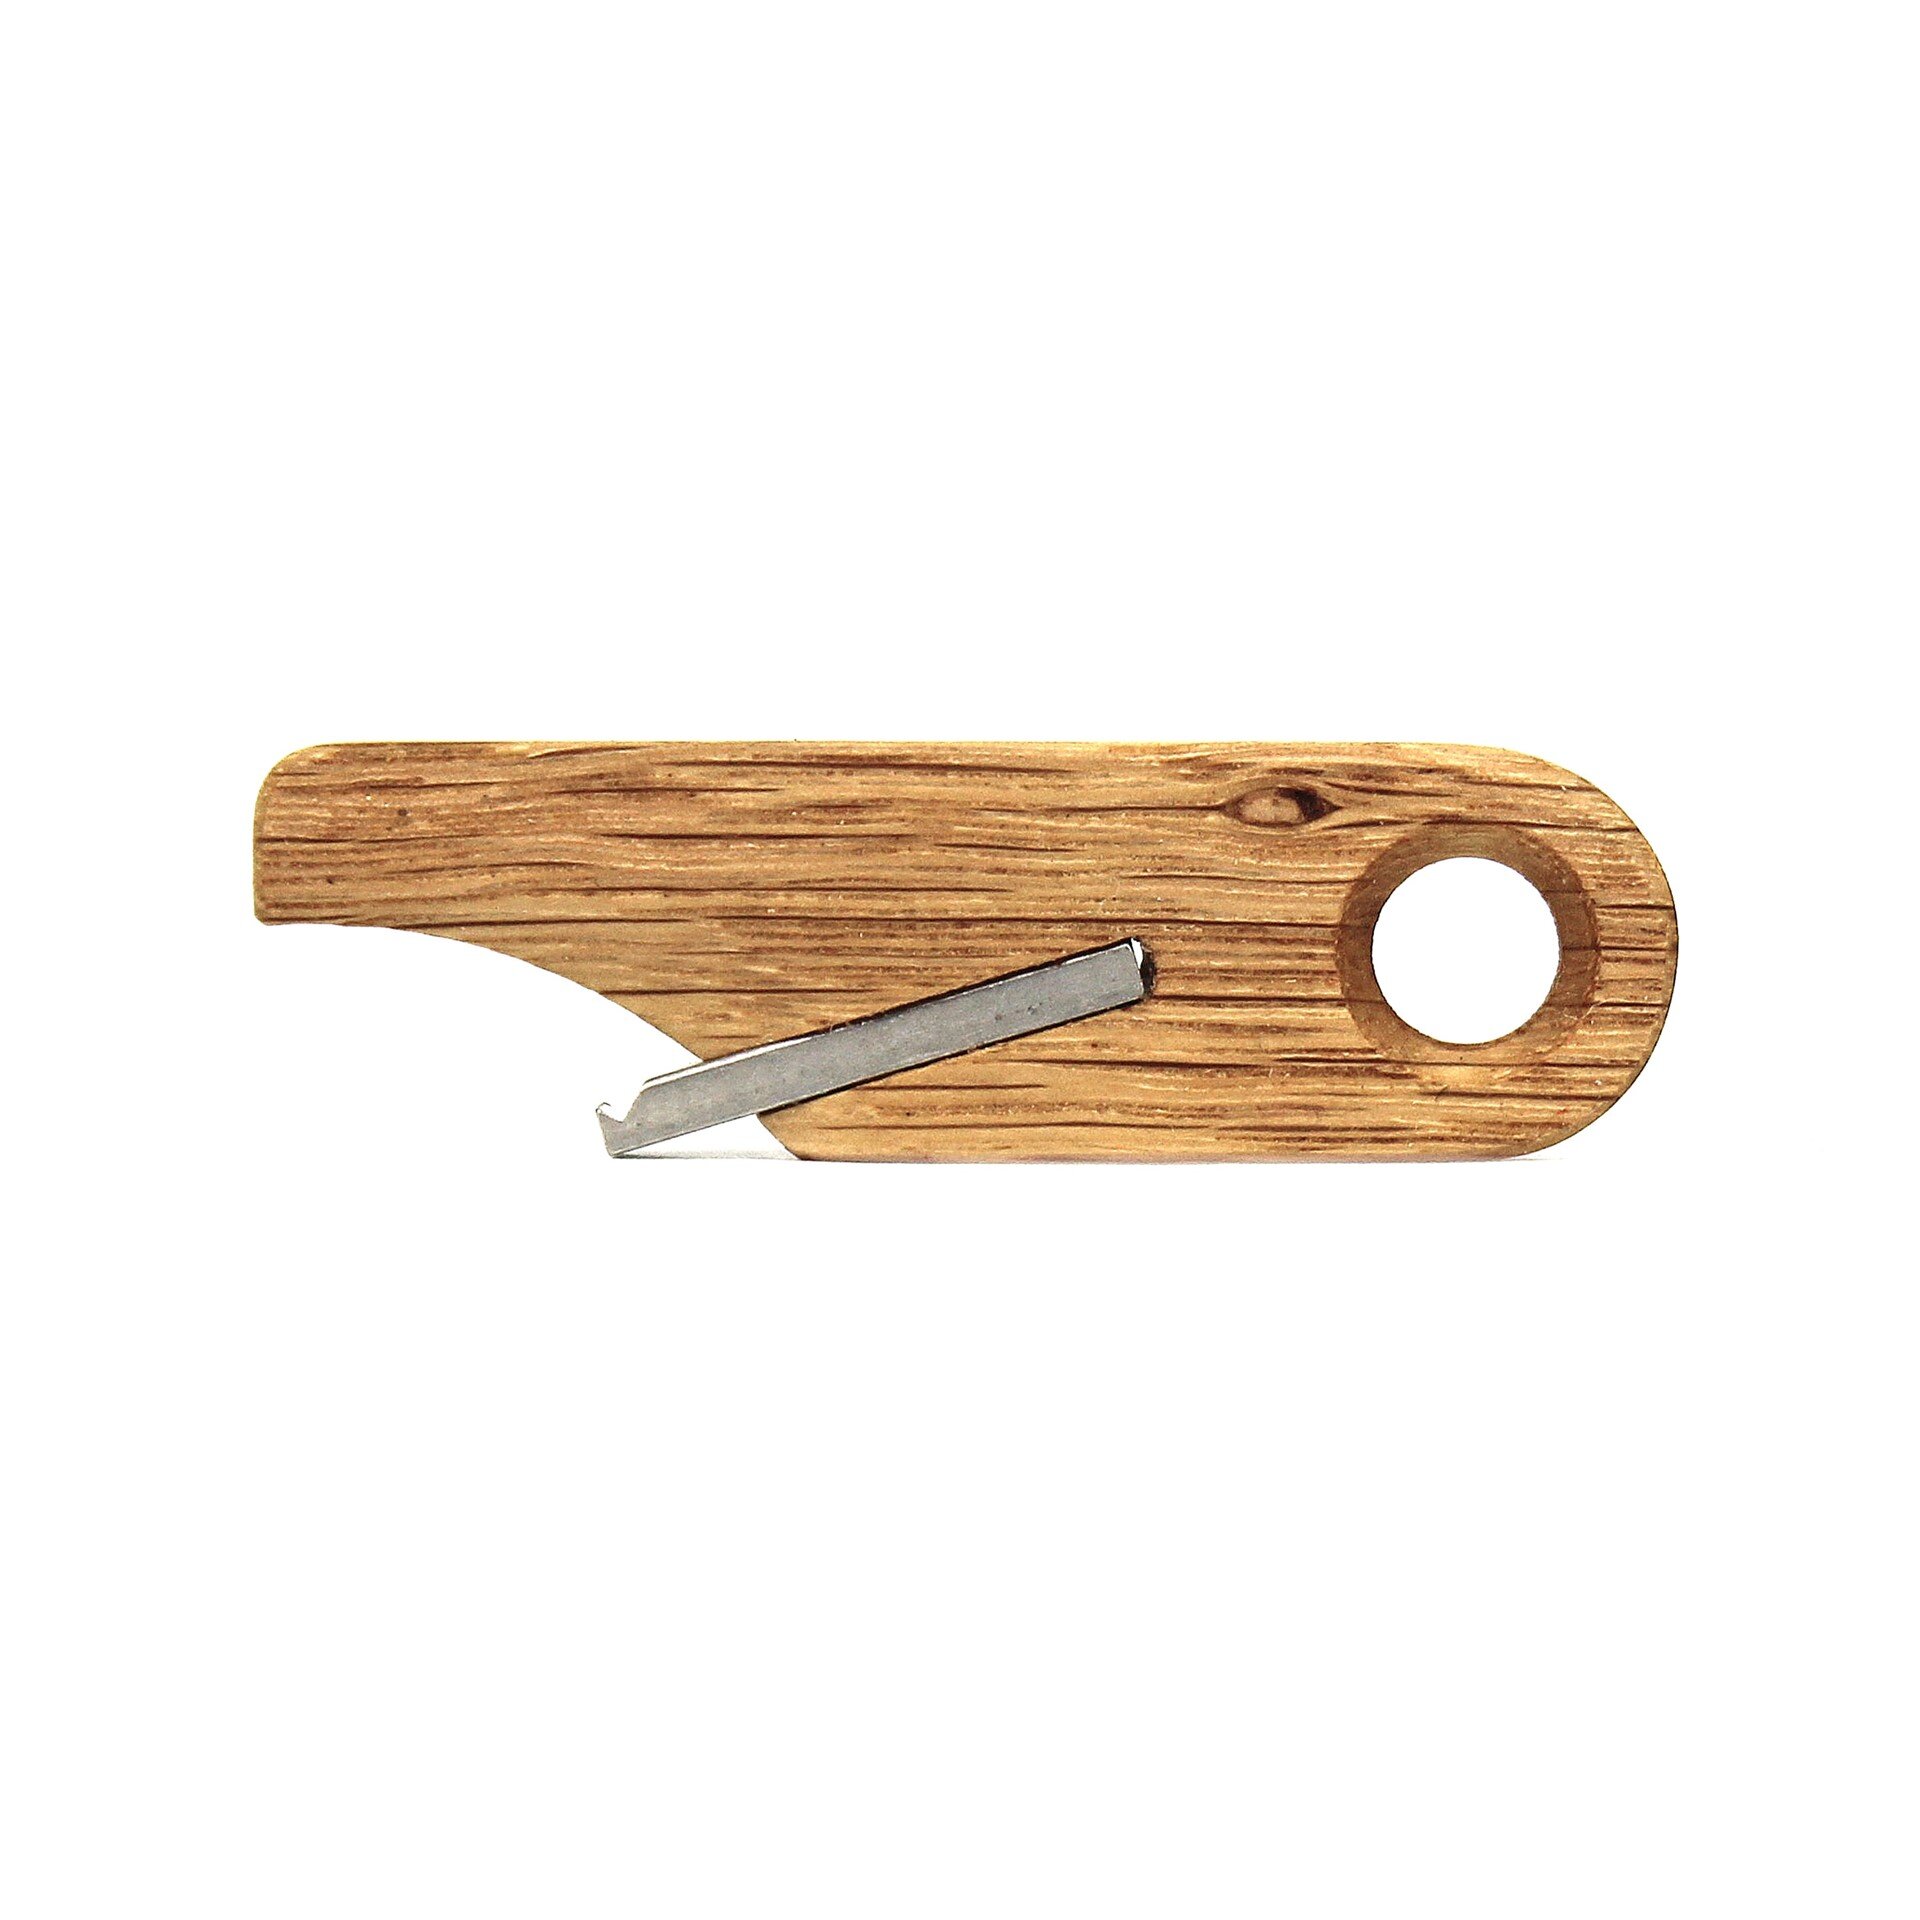 Wooden Bottle Opener Keychain by Rift Wood Company - White Oak.JPG